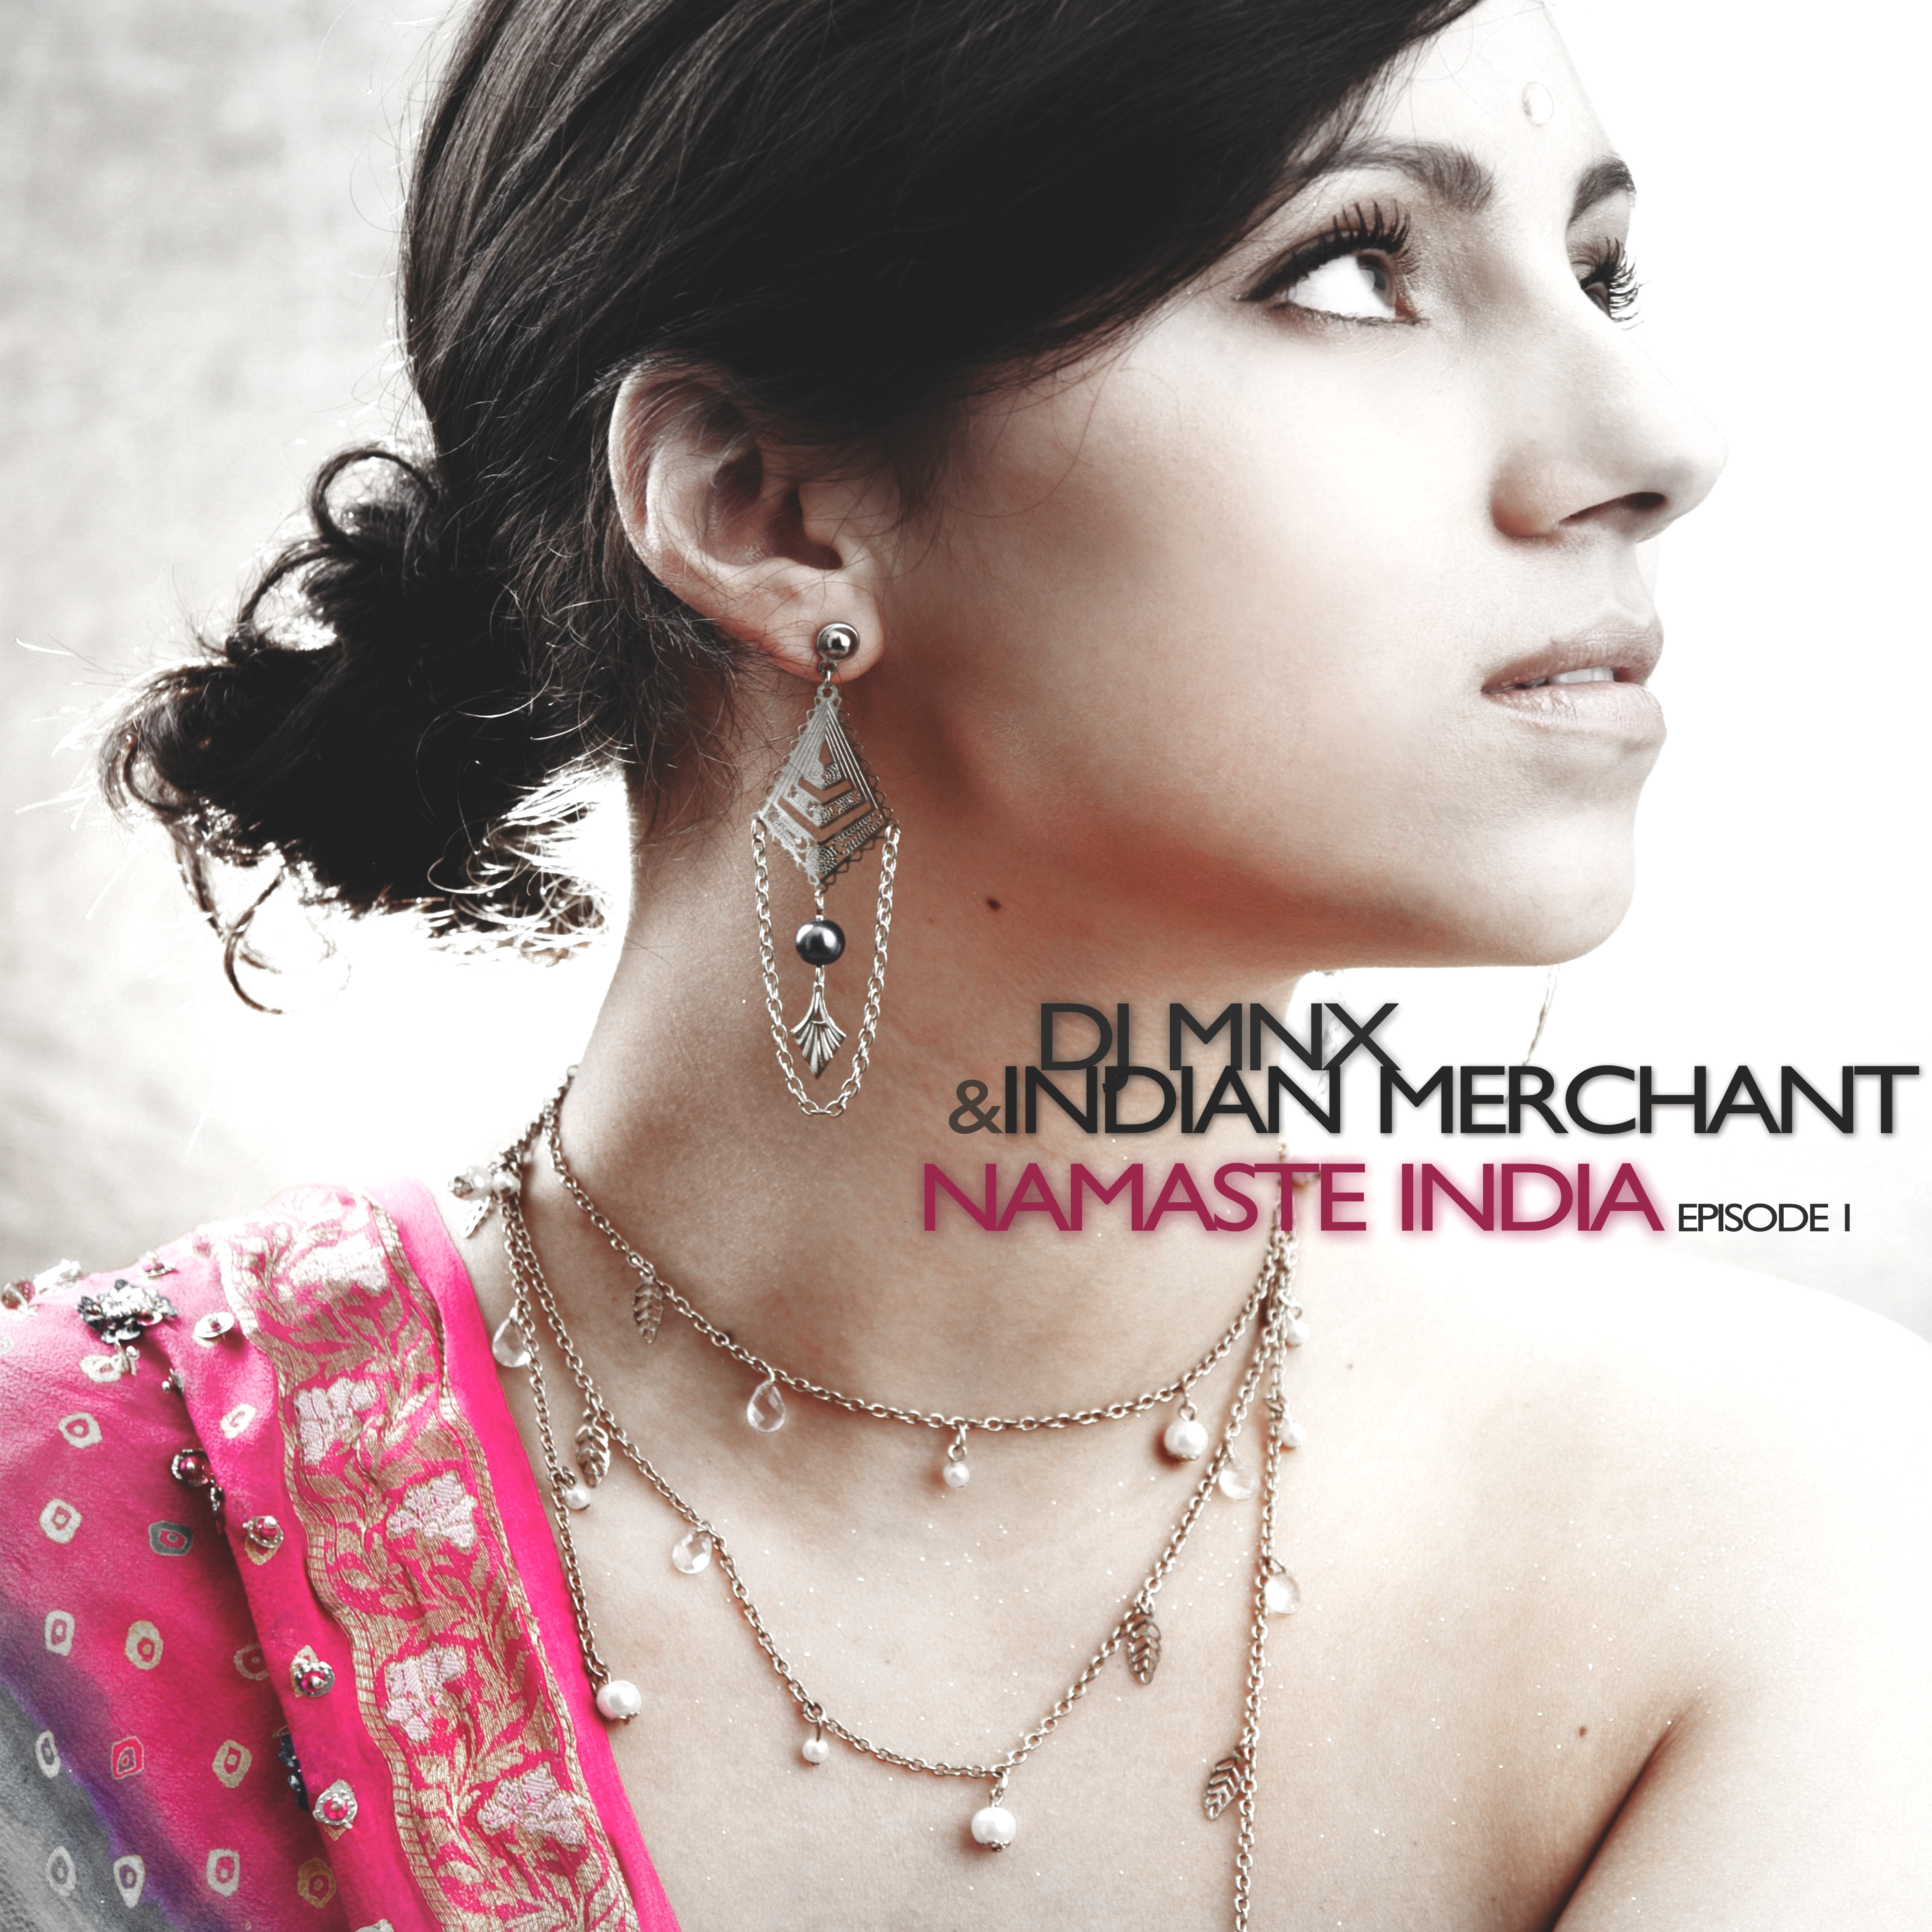 Namaste India, Episode 1